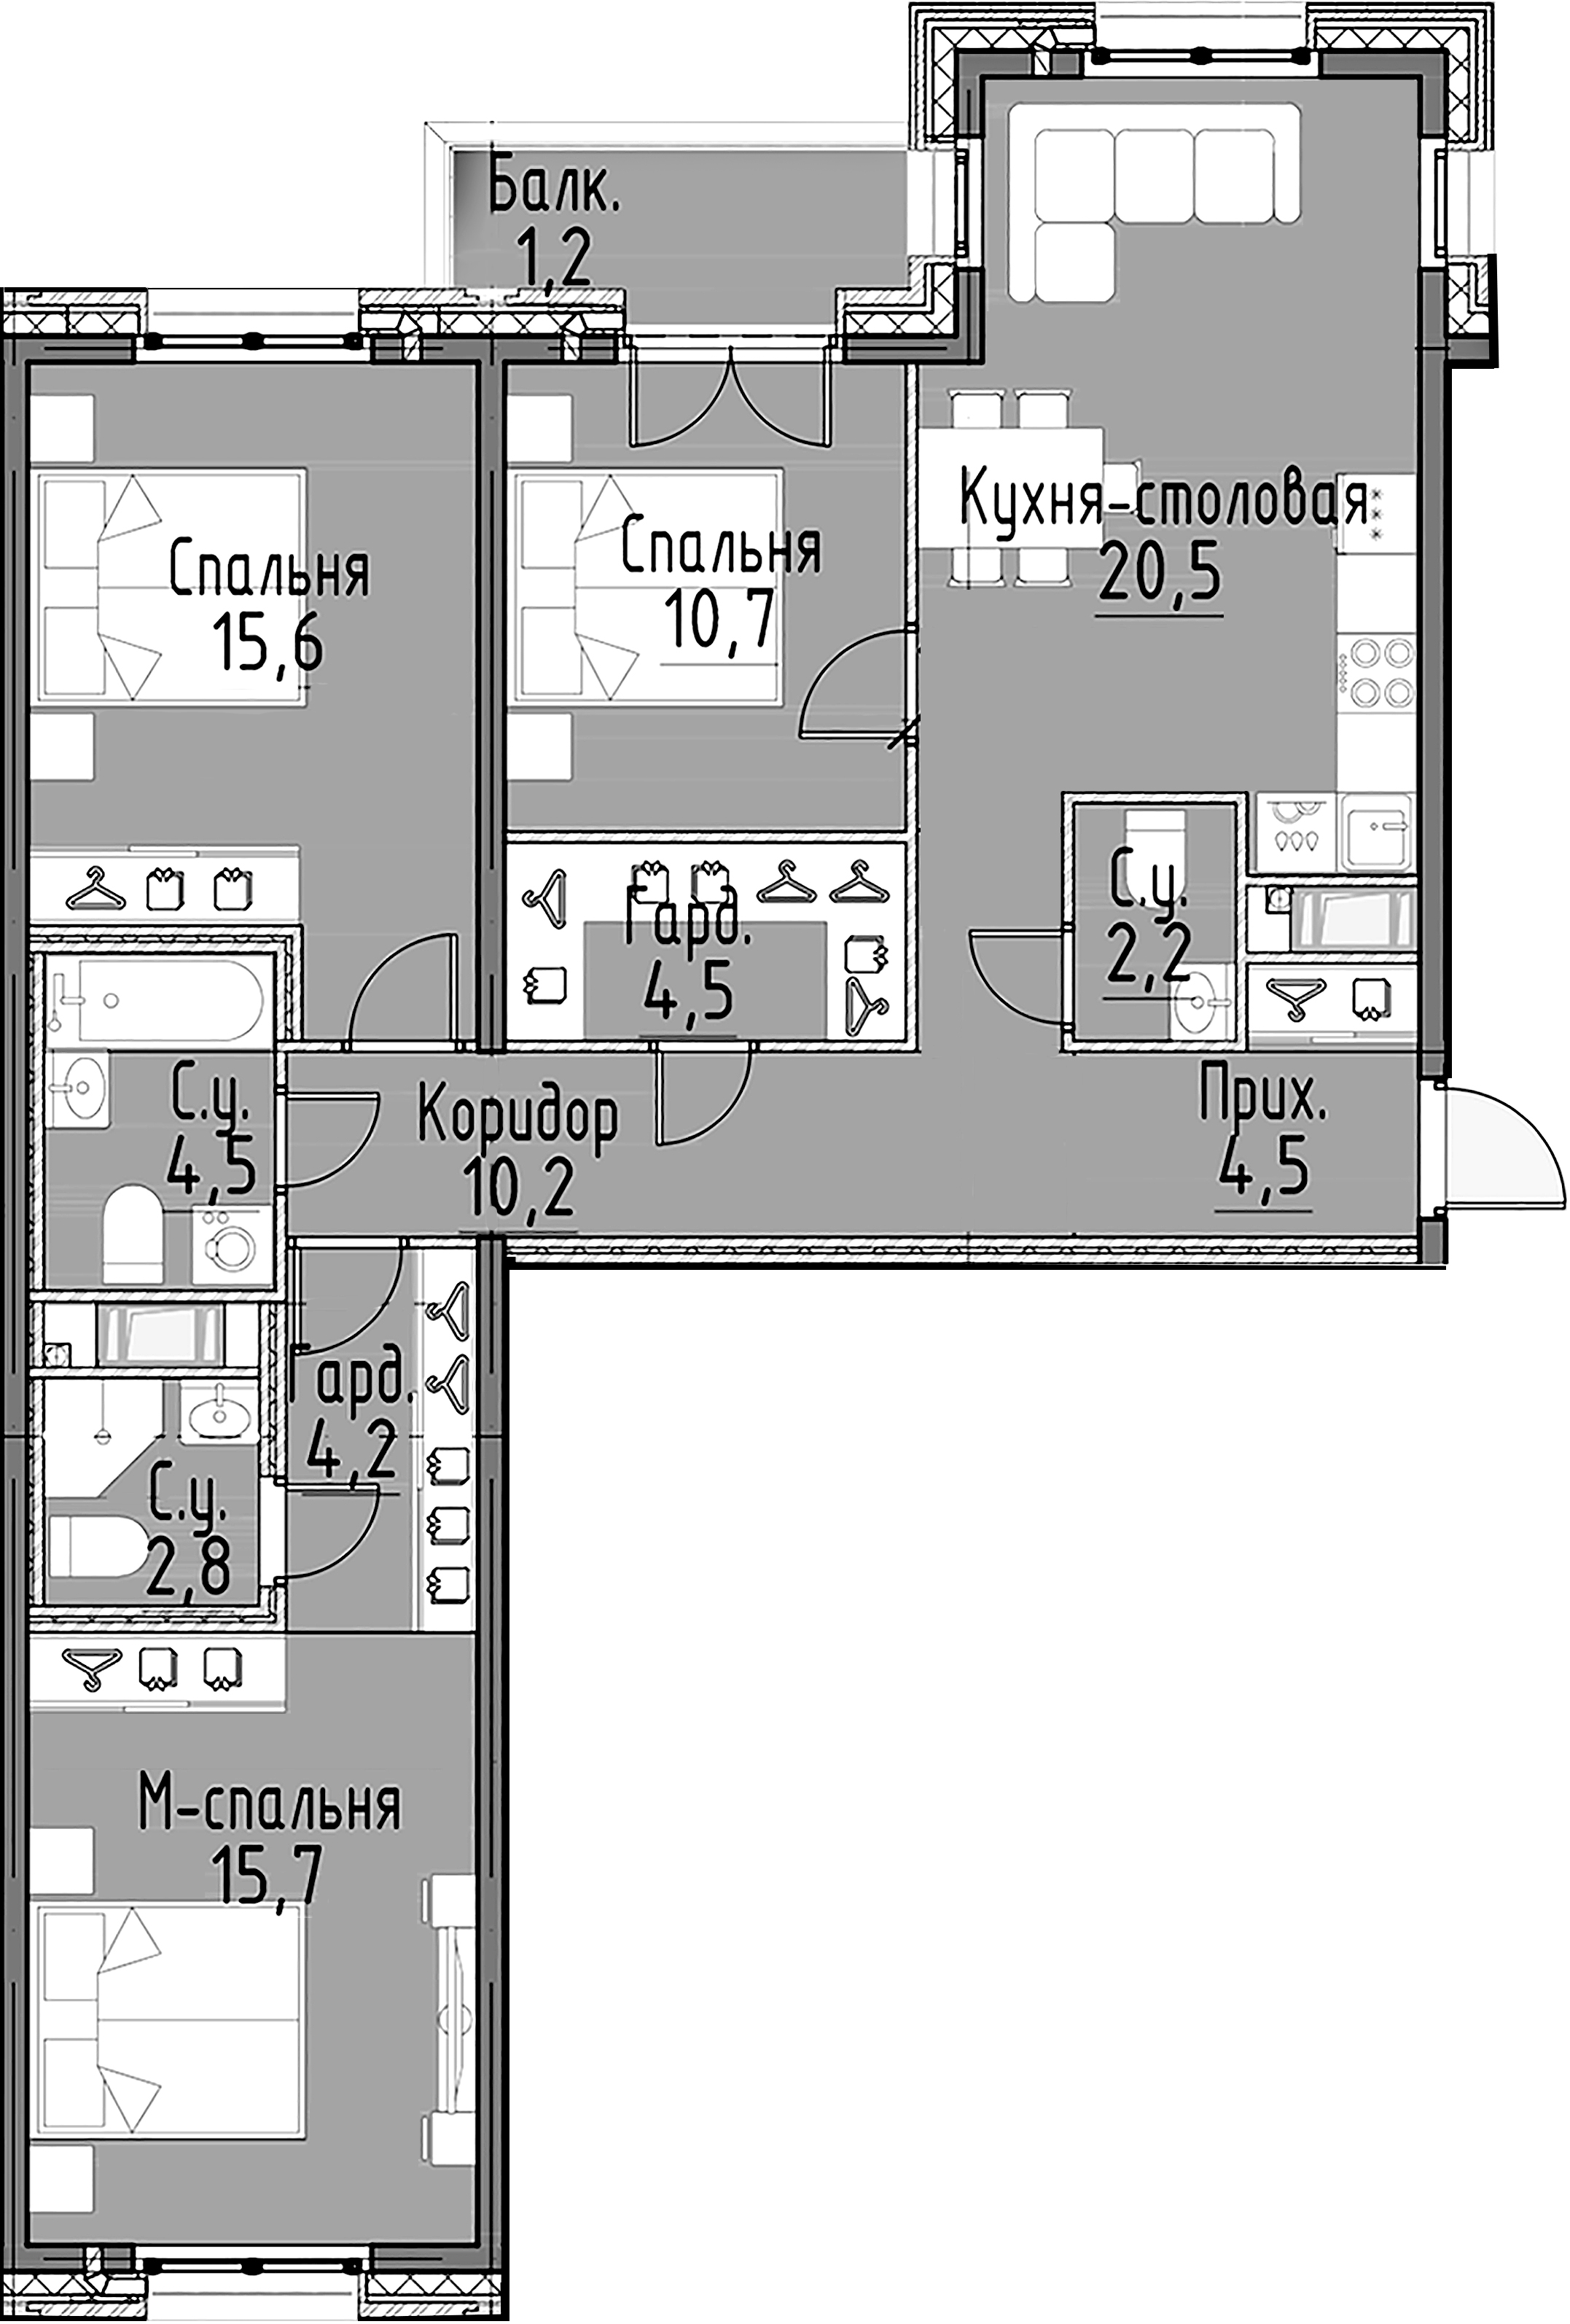 3-комнатная квартира  №51 в Моисеенко, 10: 95.5 м², этаж 7 - купить в Санкт-Петербурге